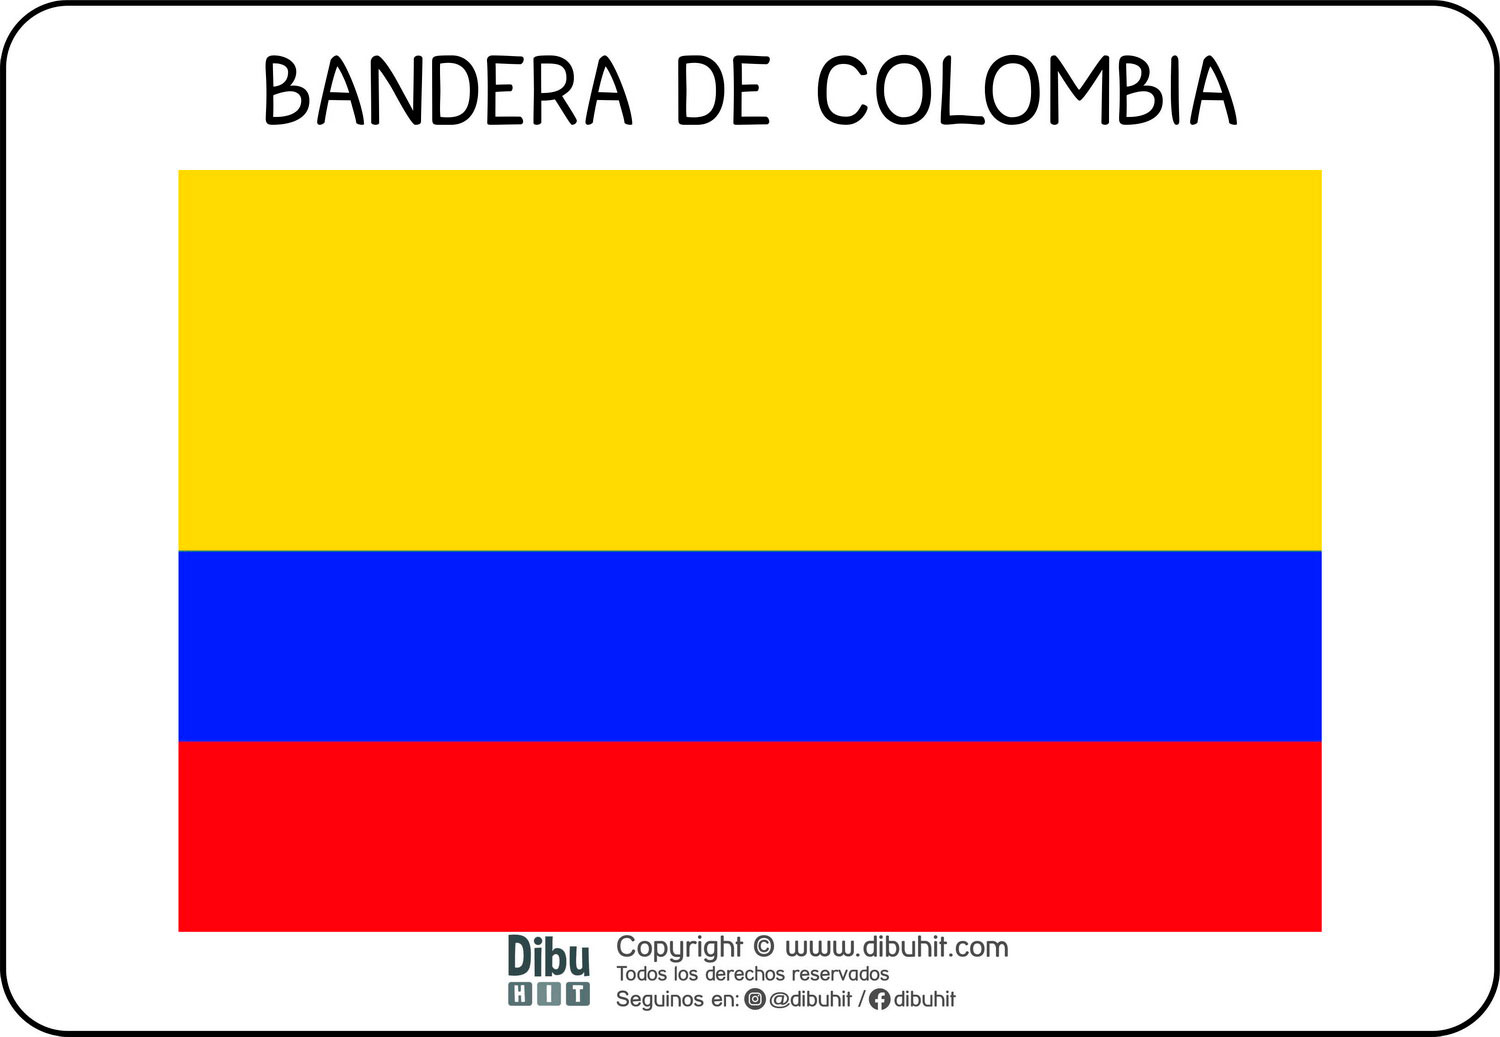 Lamina didactica bandera de Colombia a colores